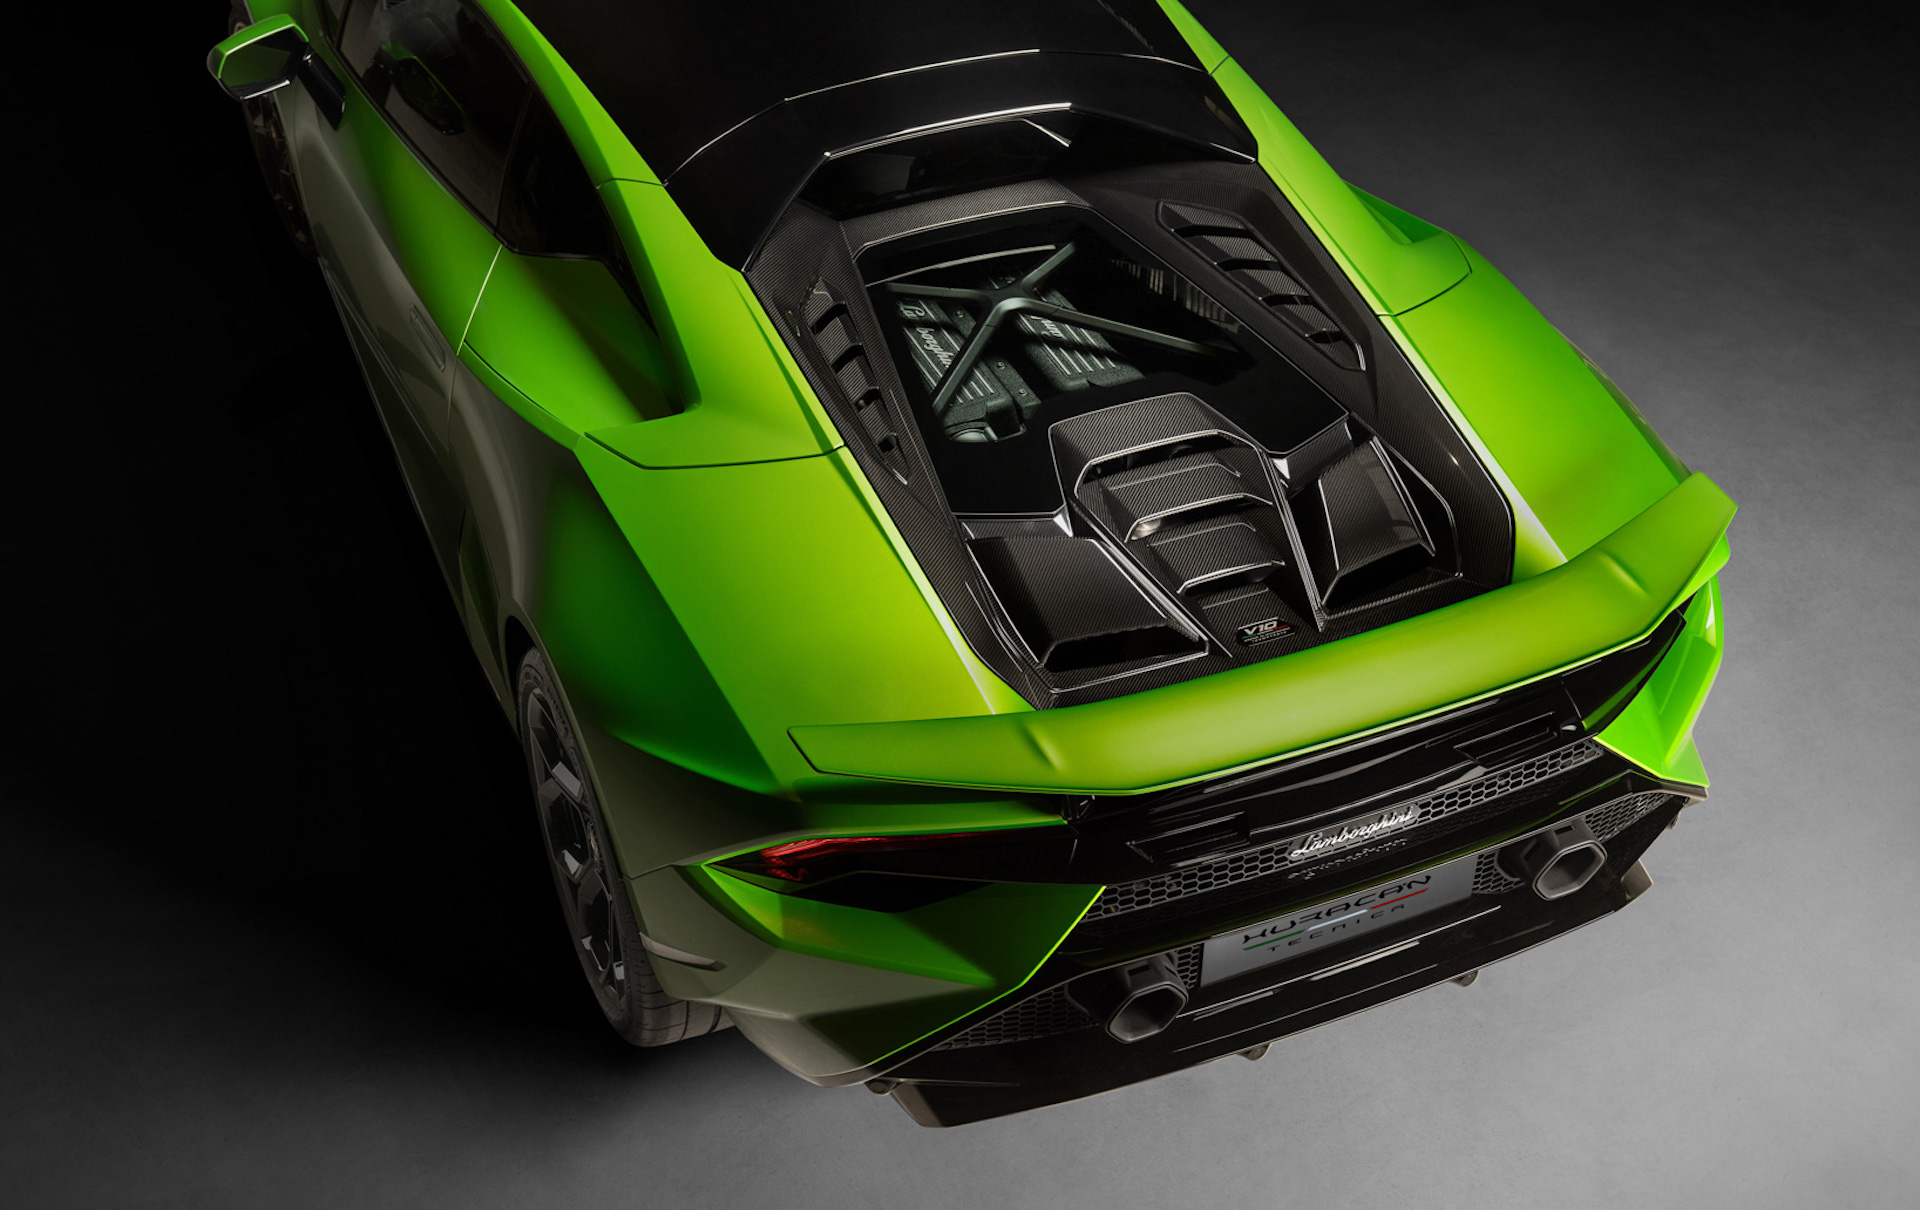 Появились подробности о новом Lamborghini Huracan Tecnica мощностью 631 л.с.